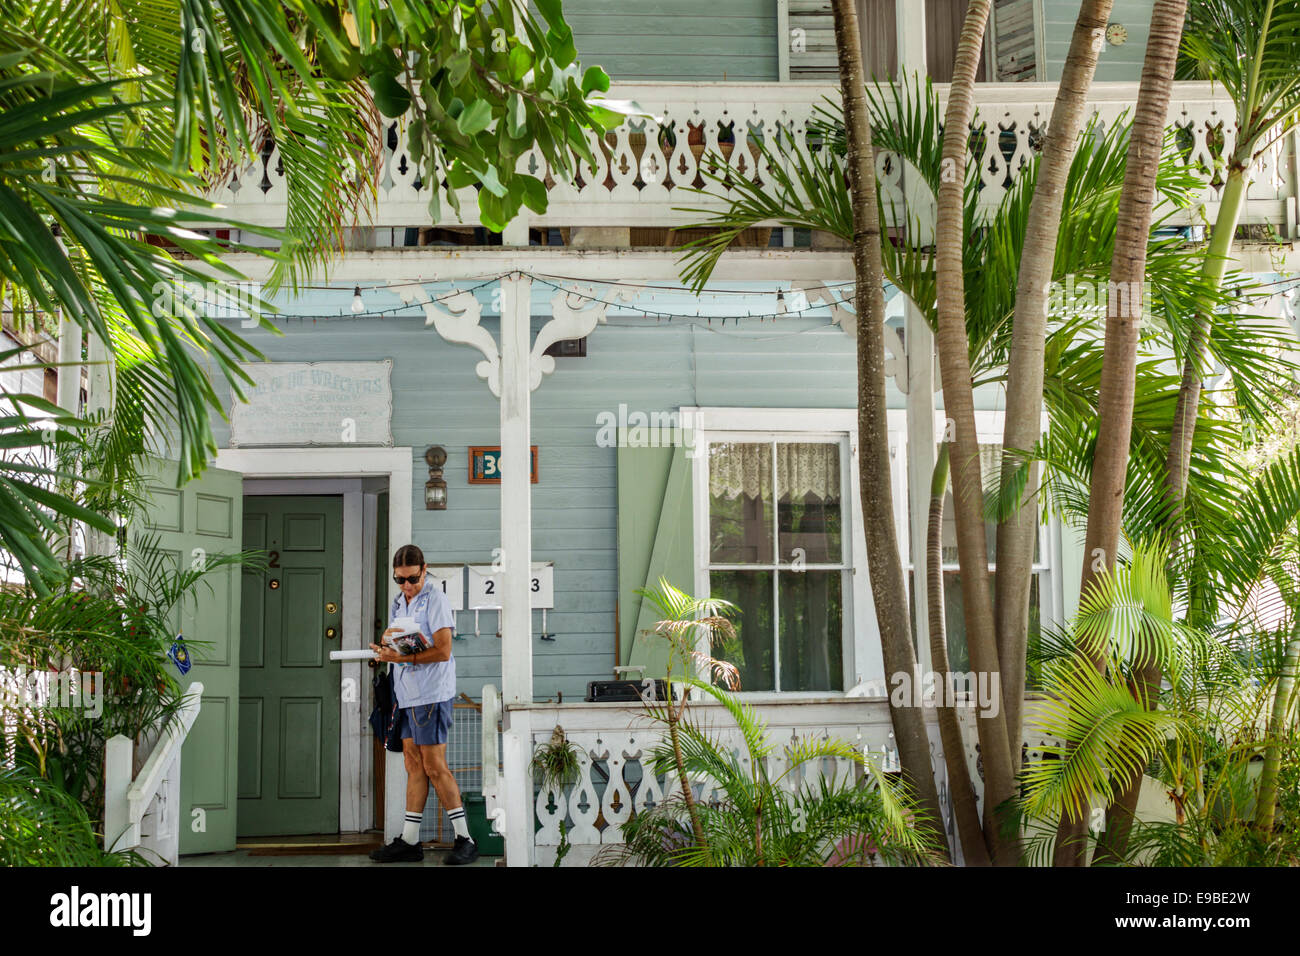 Key West Florida,Keys Whitehead Street,adultes femme femme femme femme femme,livraison de courrier,postal,aménagement paysager tropical végétation,plantes,arbres,visiteurs Banque D'Images